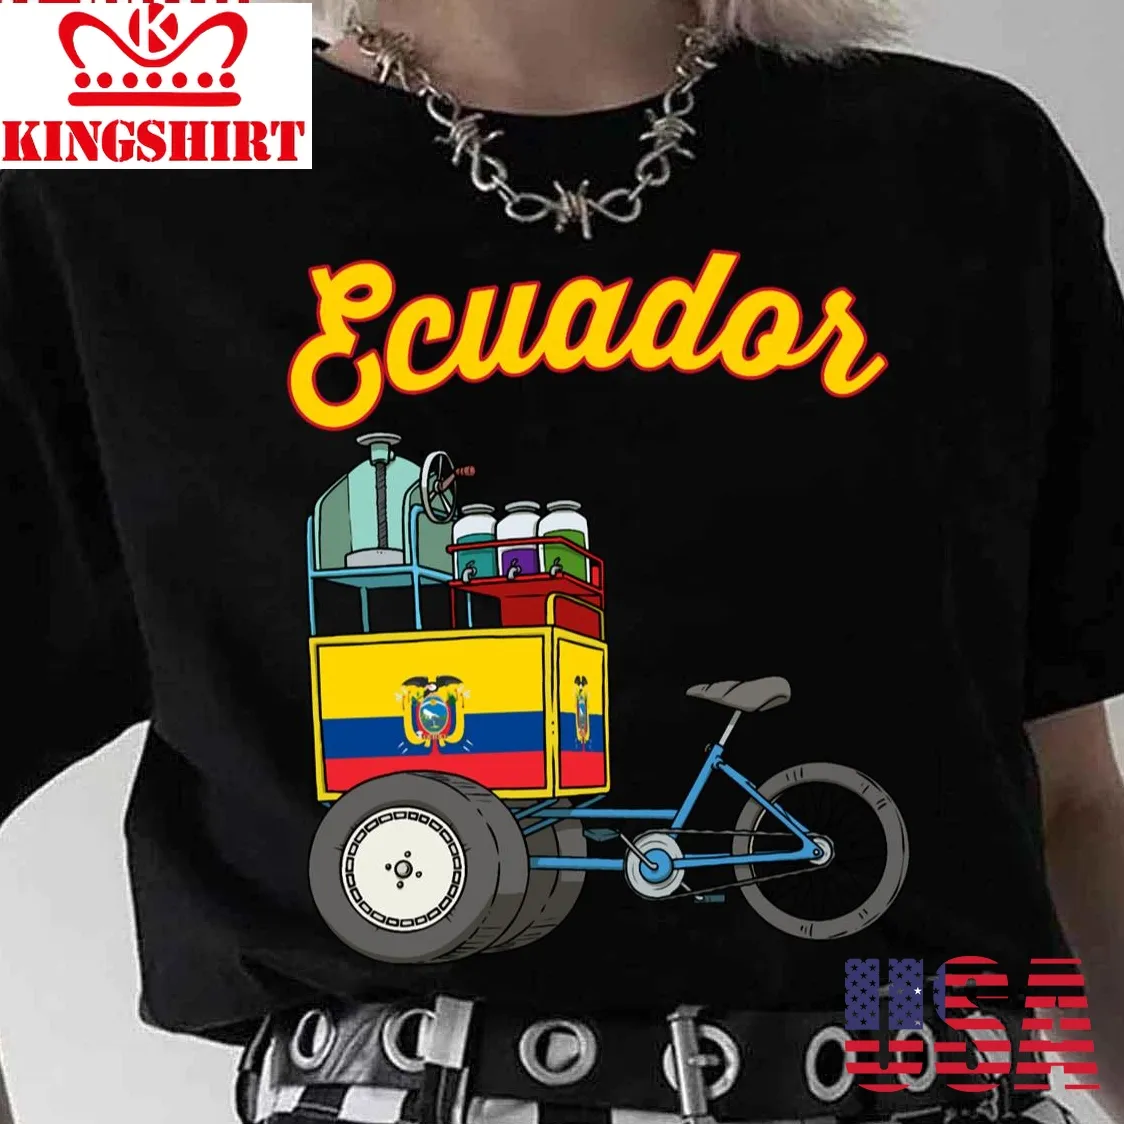 Ecuador Design For Ecuatorianos Unisex T Shirt